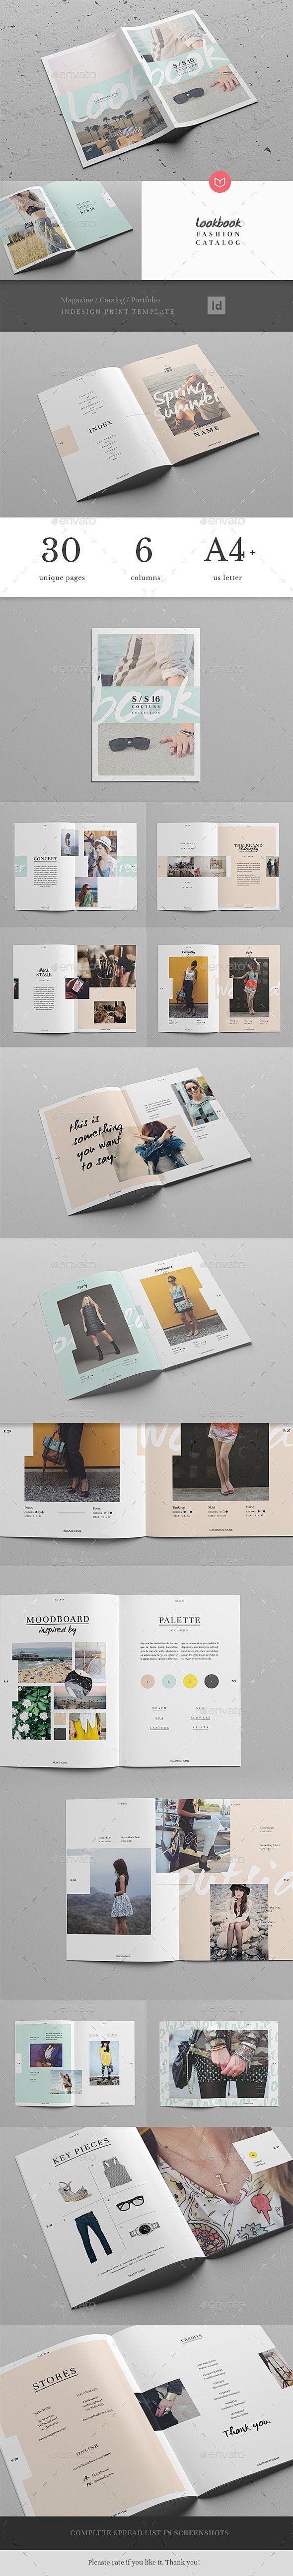 40例美丽时尚的宣传画册模板设计 设计圈...